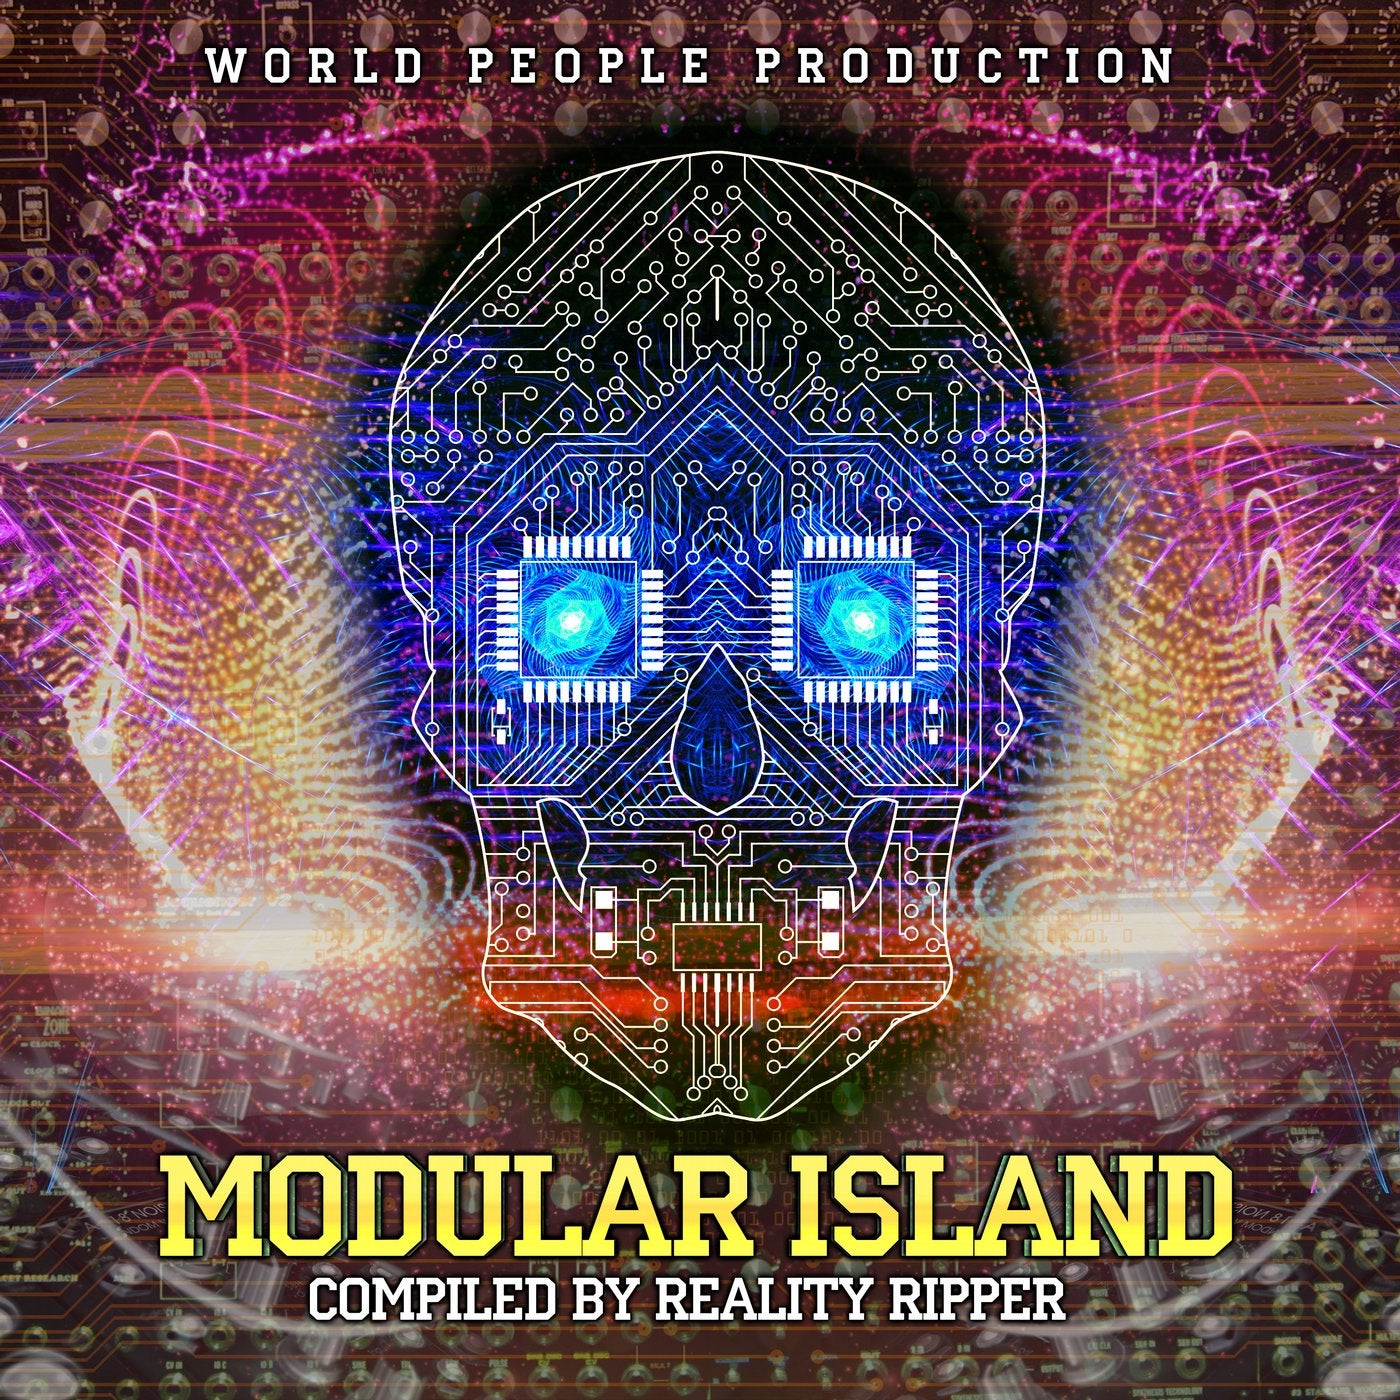 Modular Island